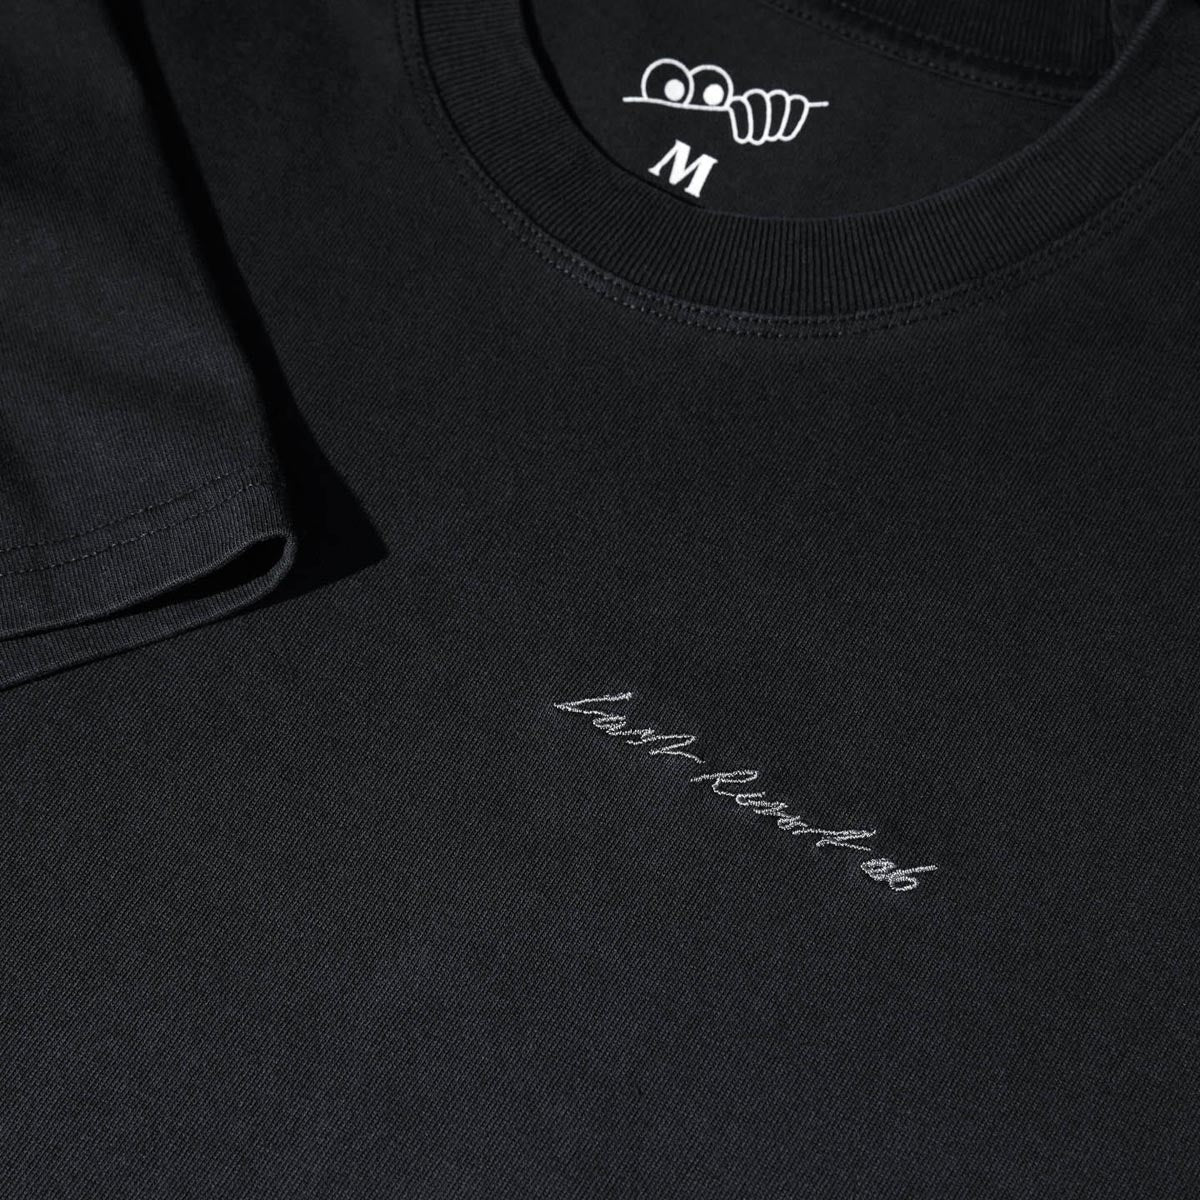 Last Resort AB Signature T-Shirt - Washed Black image 2